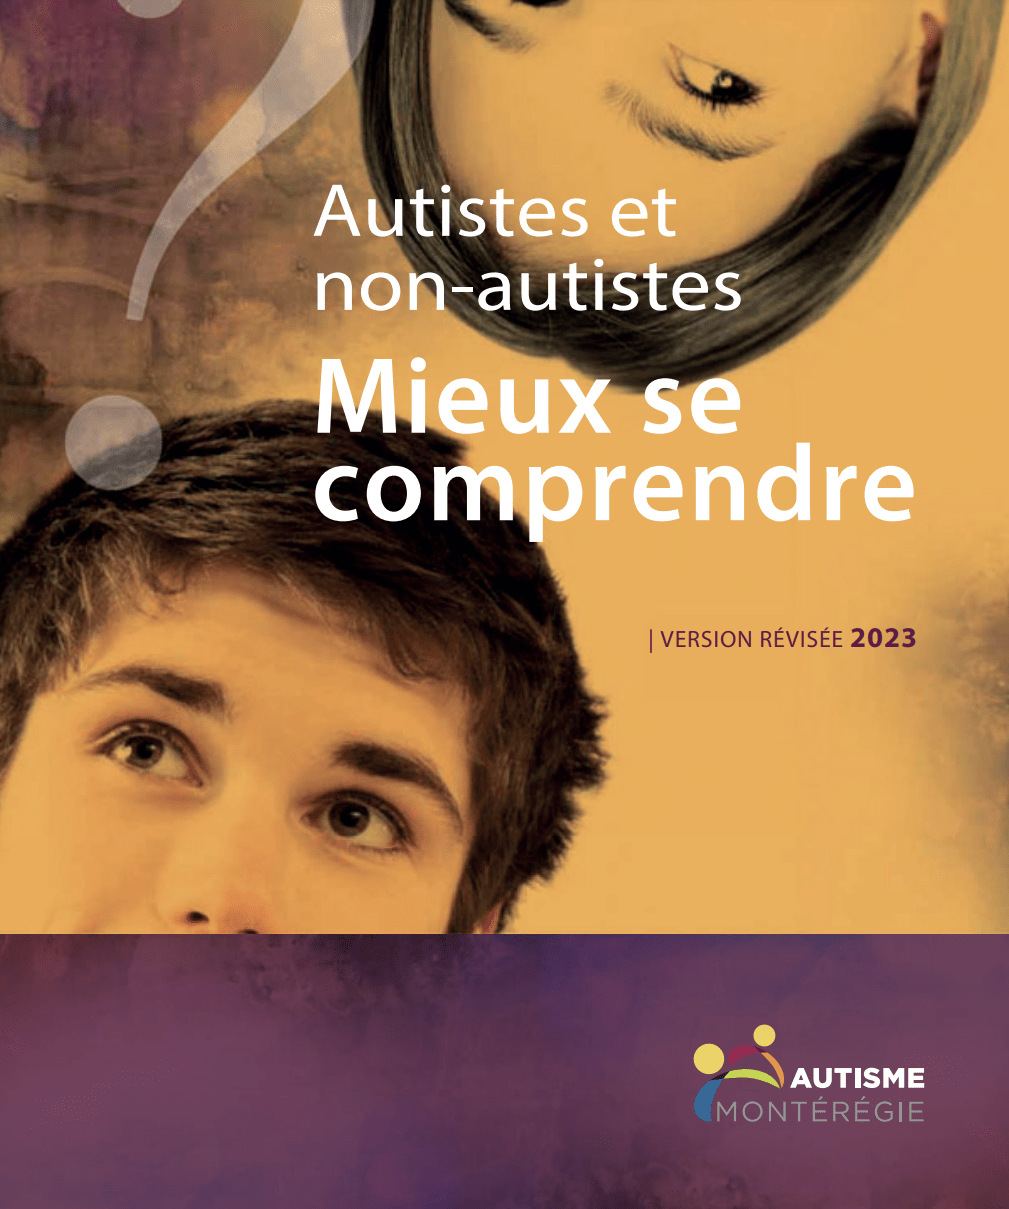 [Canada] Guide “Autistes et Non-Autistes : Mieux se comprendre” (Autisme Montérégie, 2023)